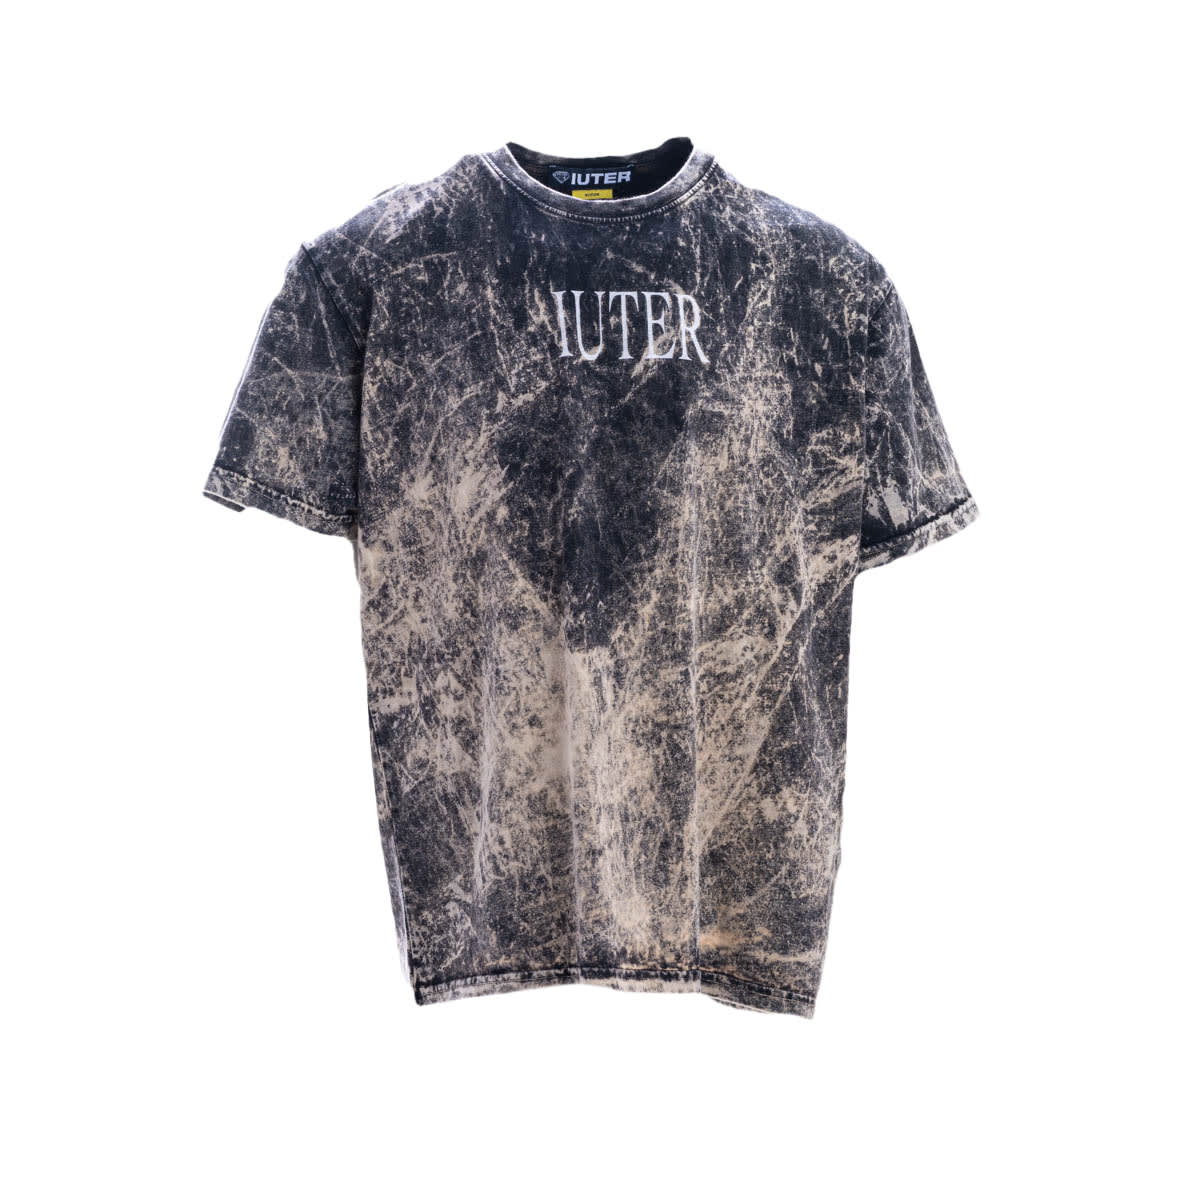 Iuter Cotton T-shirt